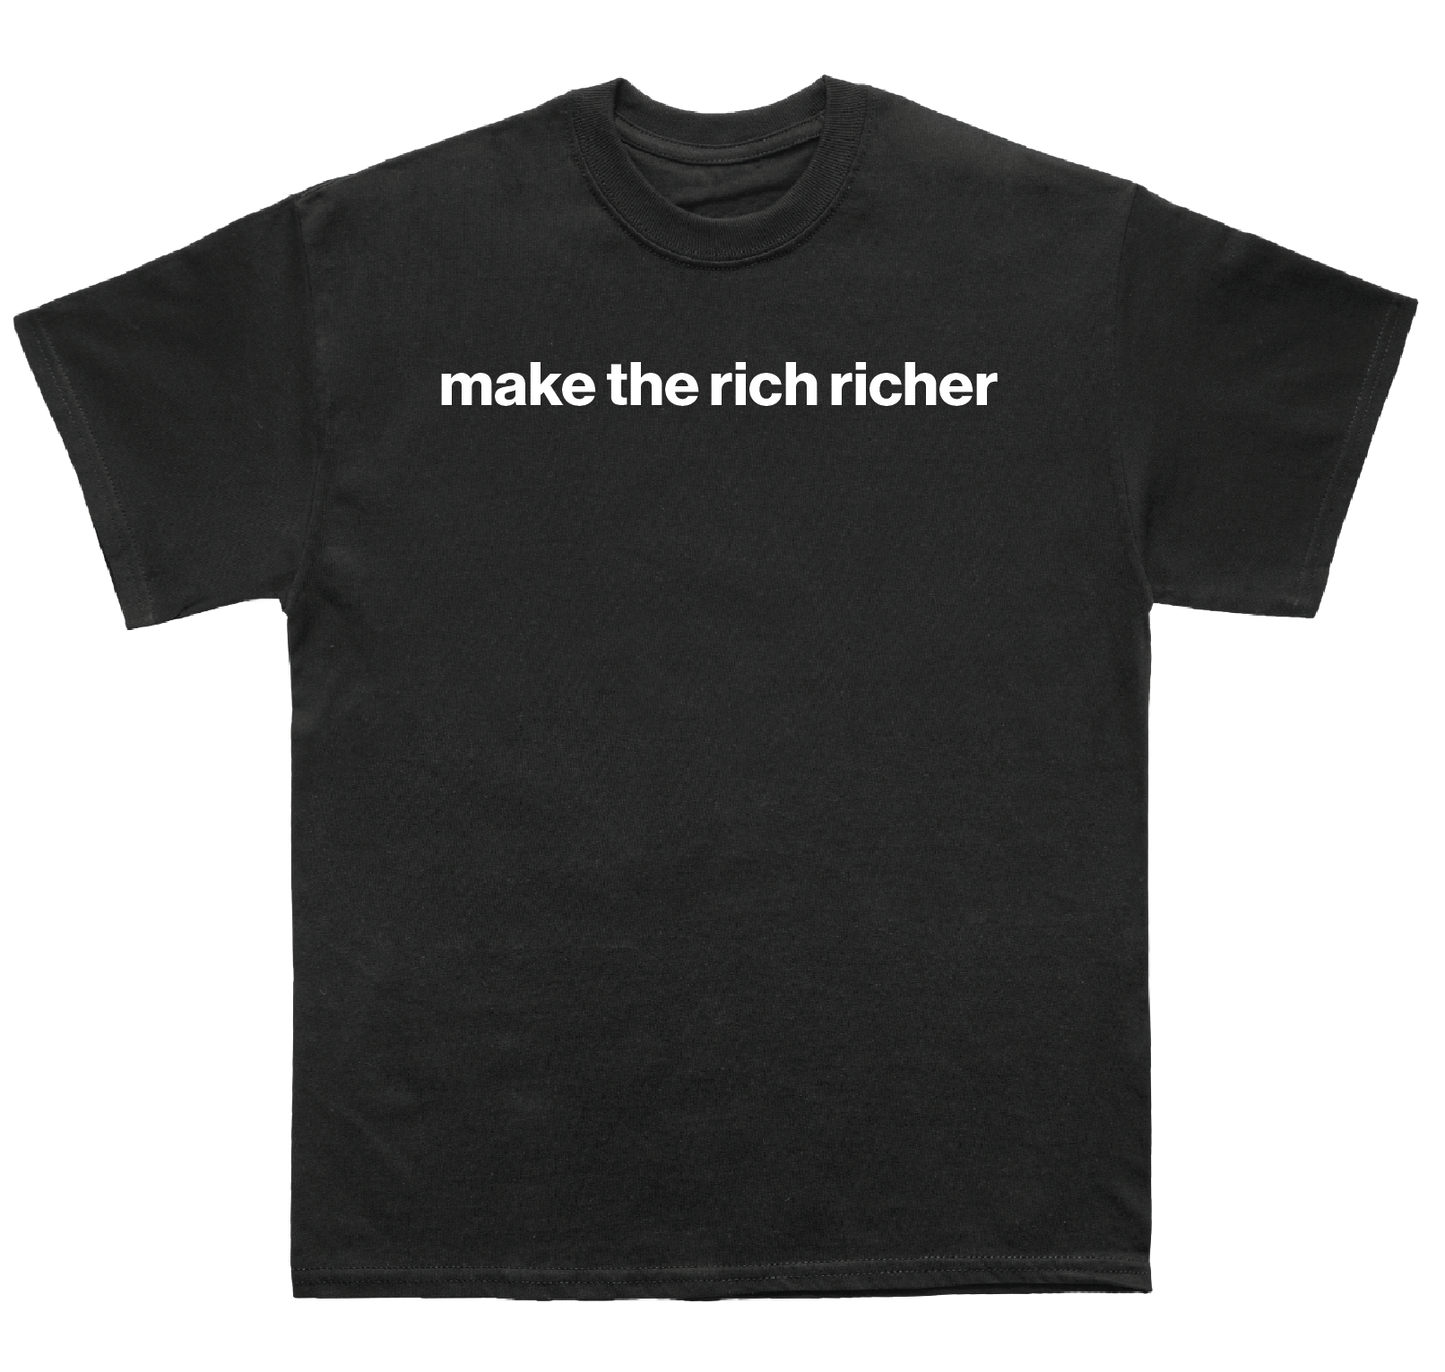 make the rich richer shirt